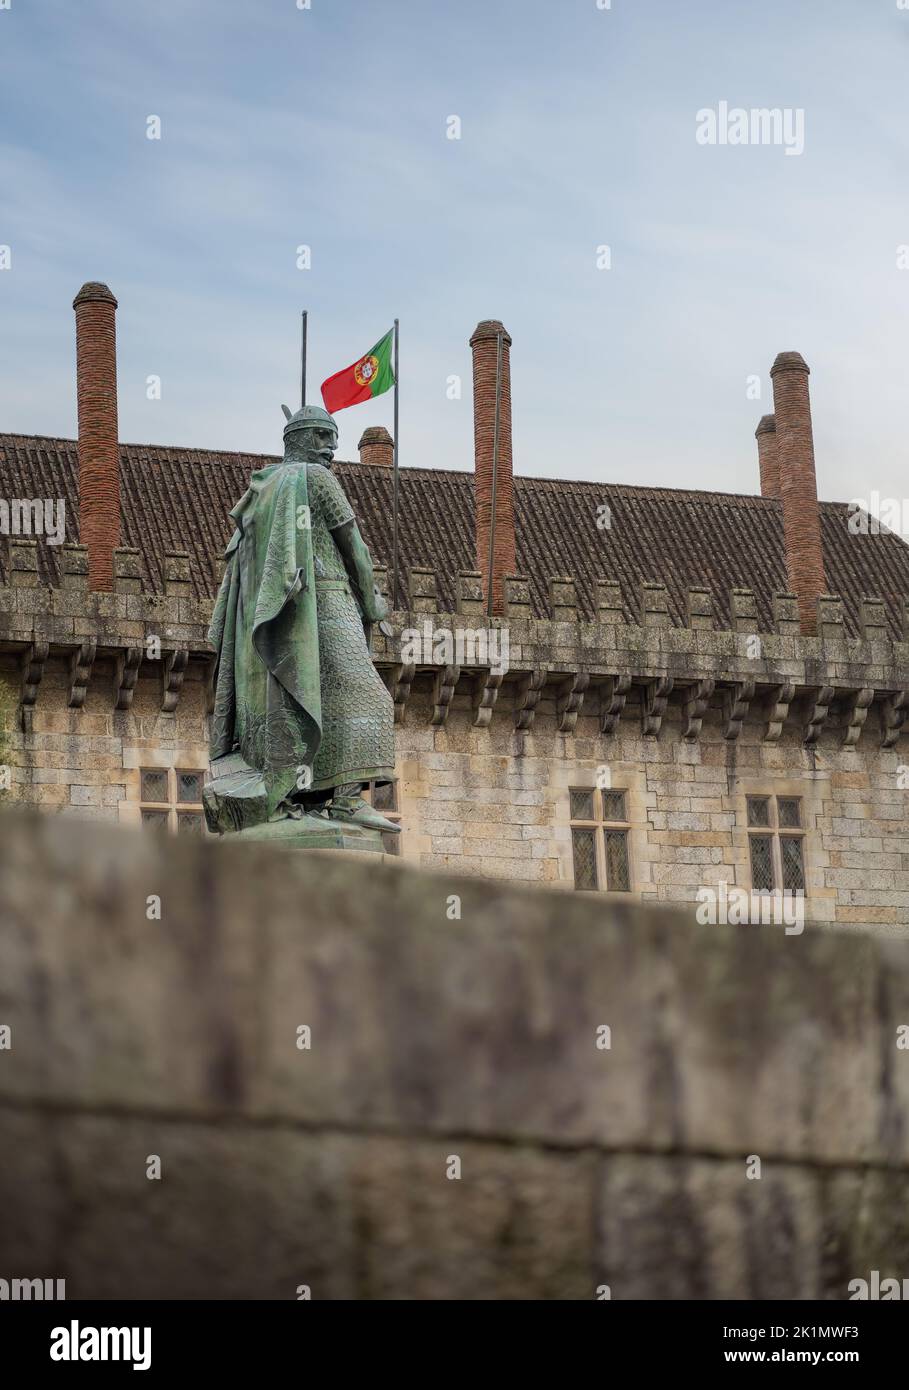 Statua del re Afonso Henriques (Afonso i del Portogallo) e bandiera portoghese, scolpita da Soares dos Reis nel 1887 - Guimaraes, Portogallo Foto Stock